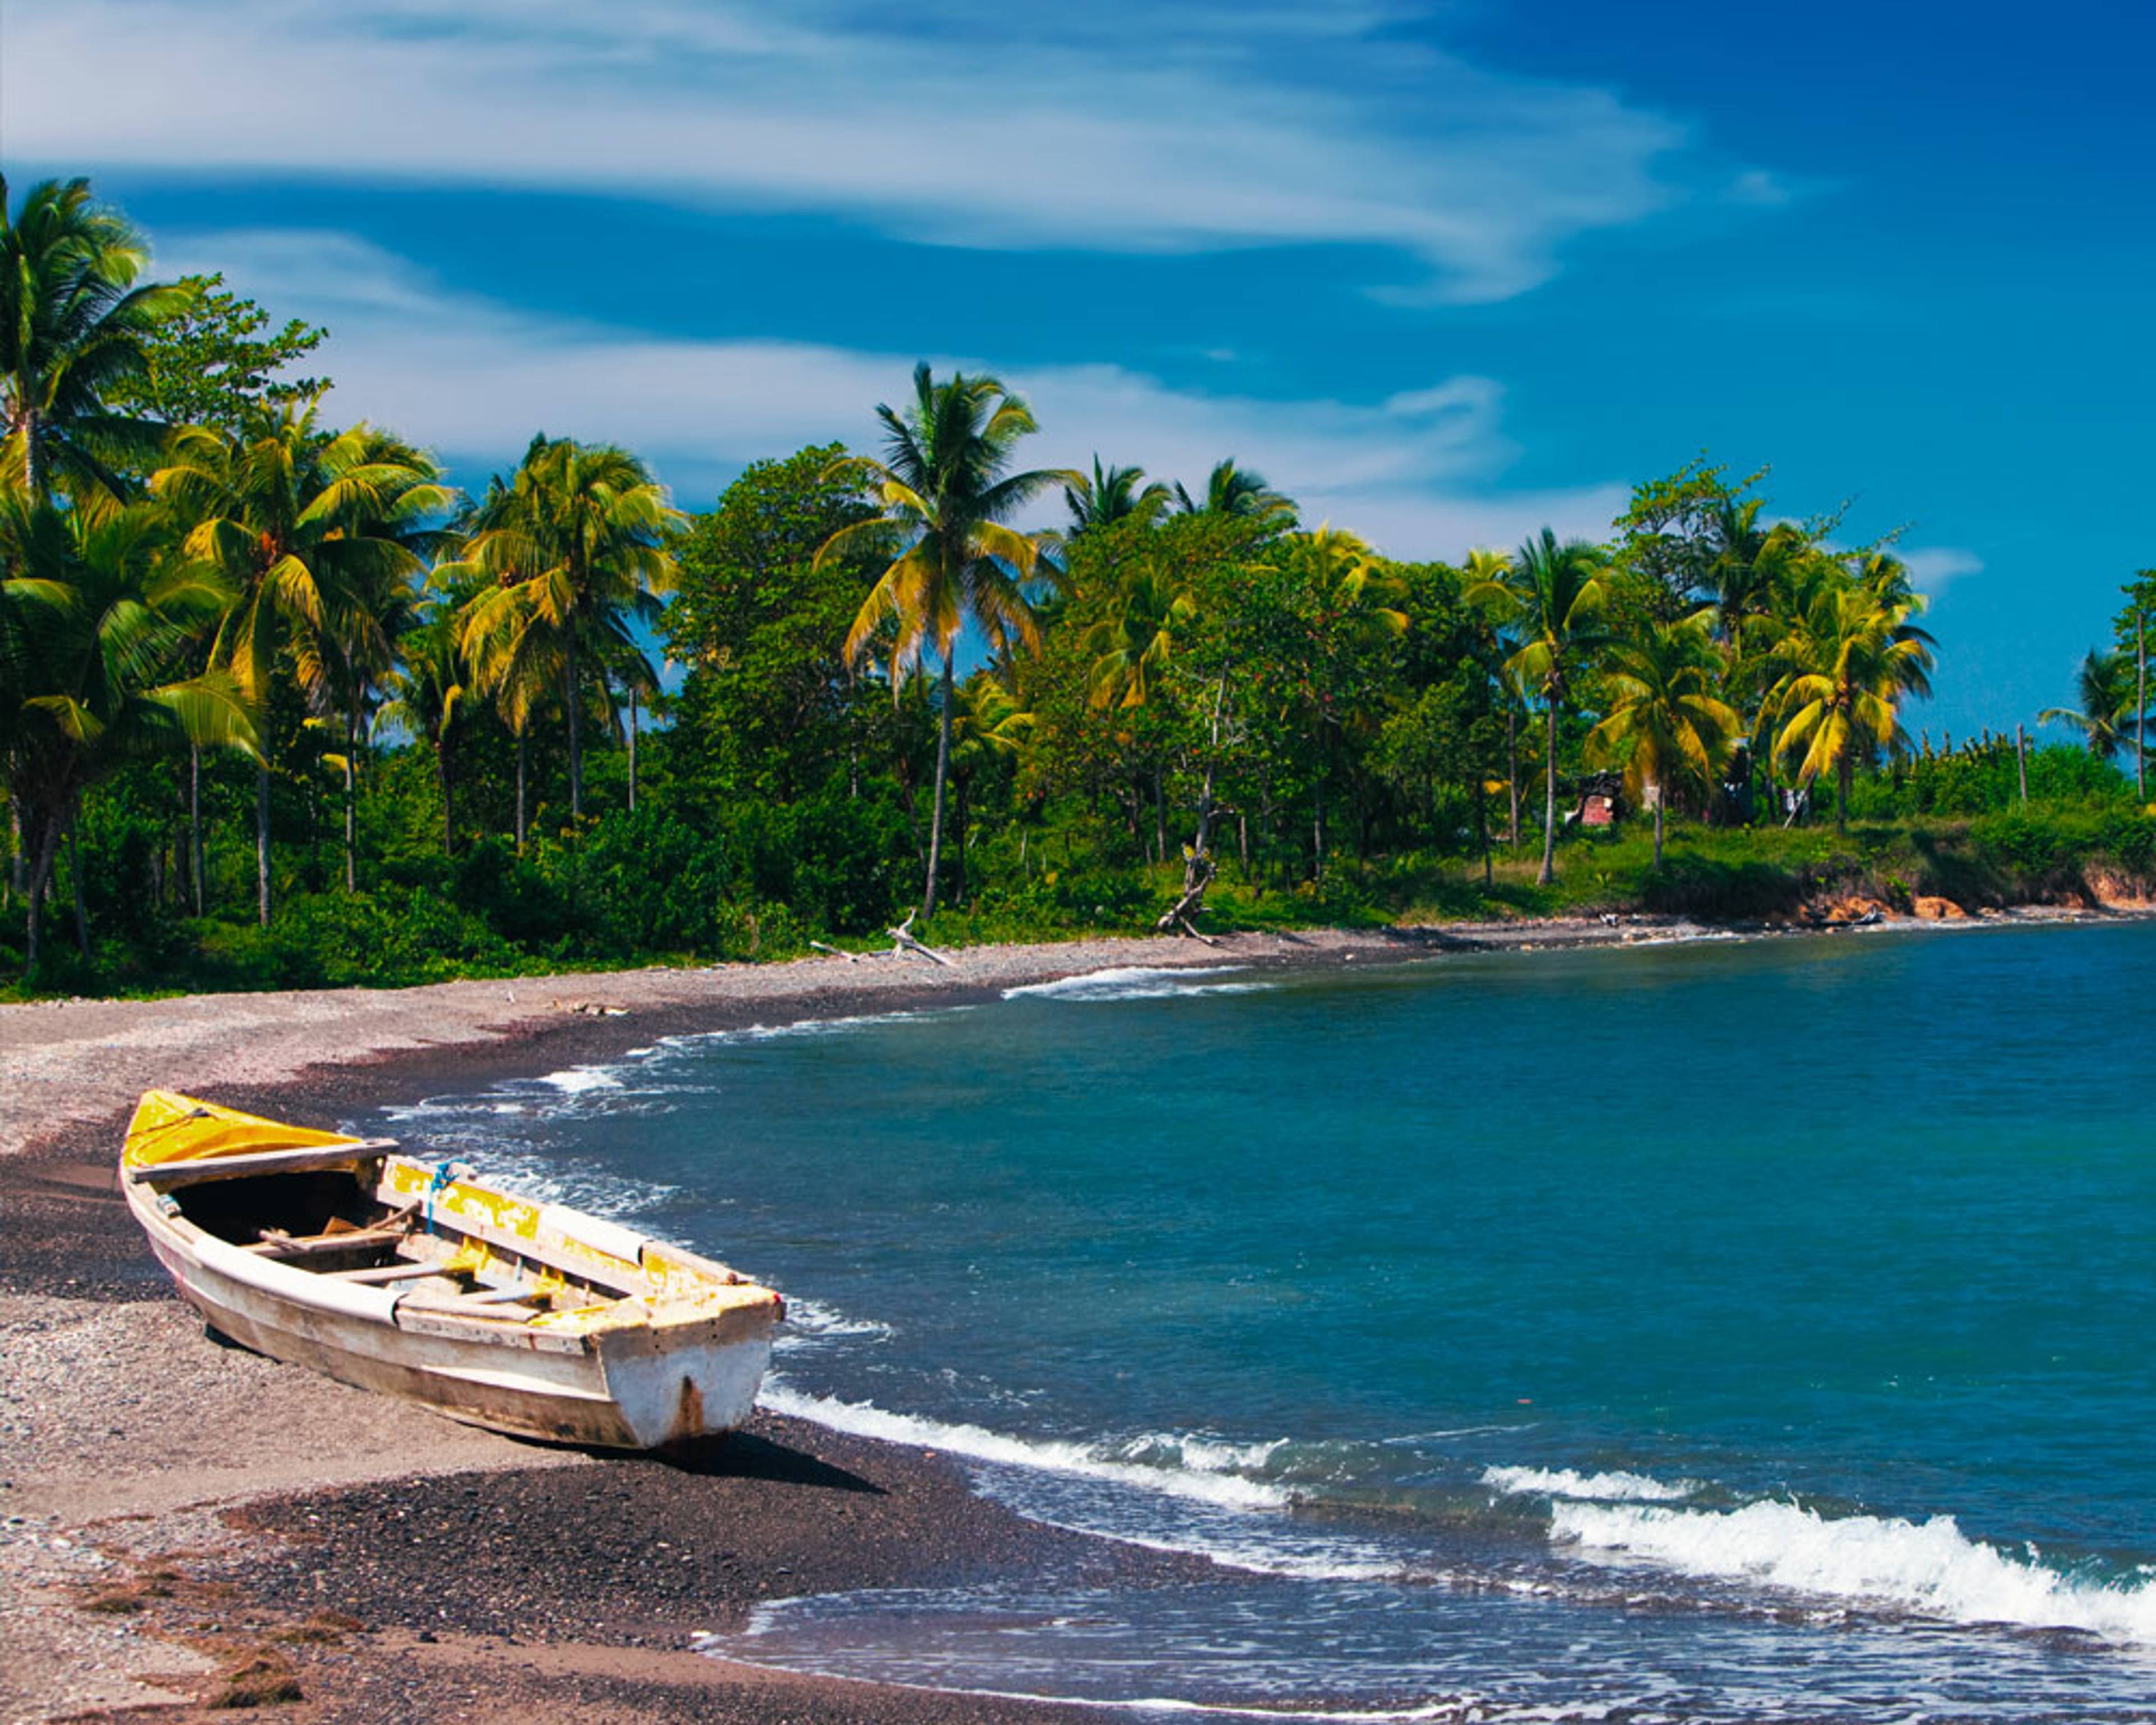 Découvrez les plus belles plages lors de votre voyage en Jamaïque 100% sur mesure